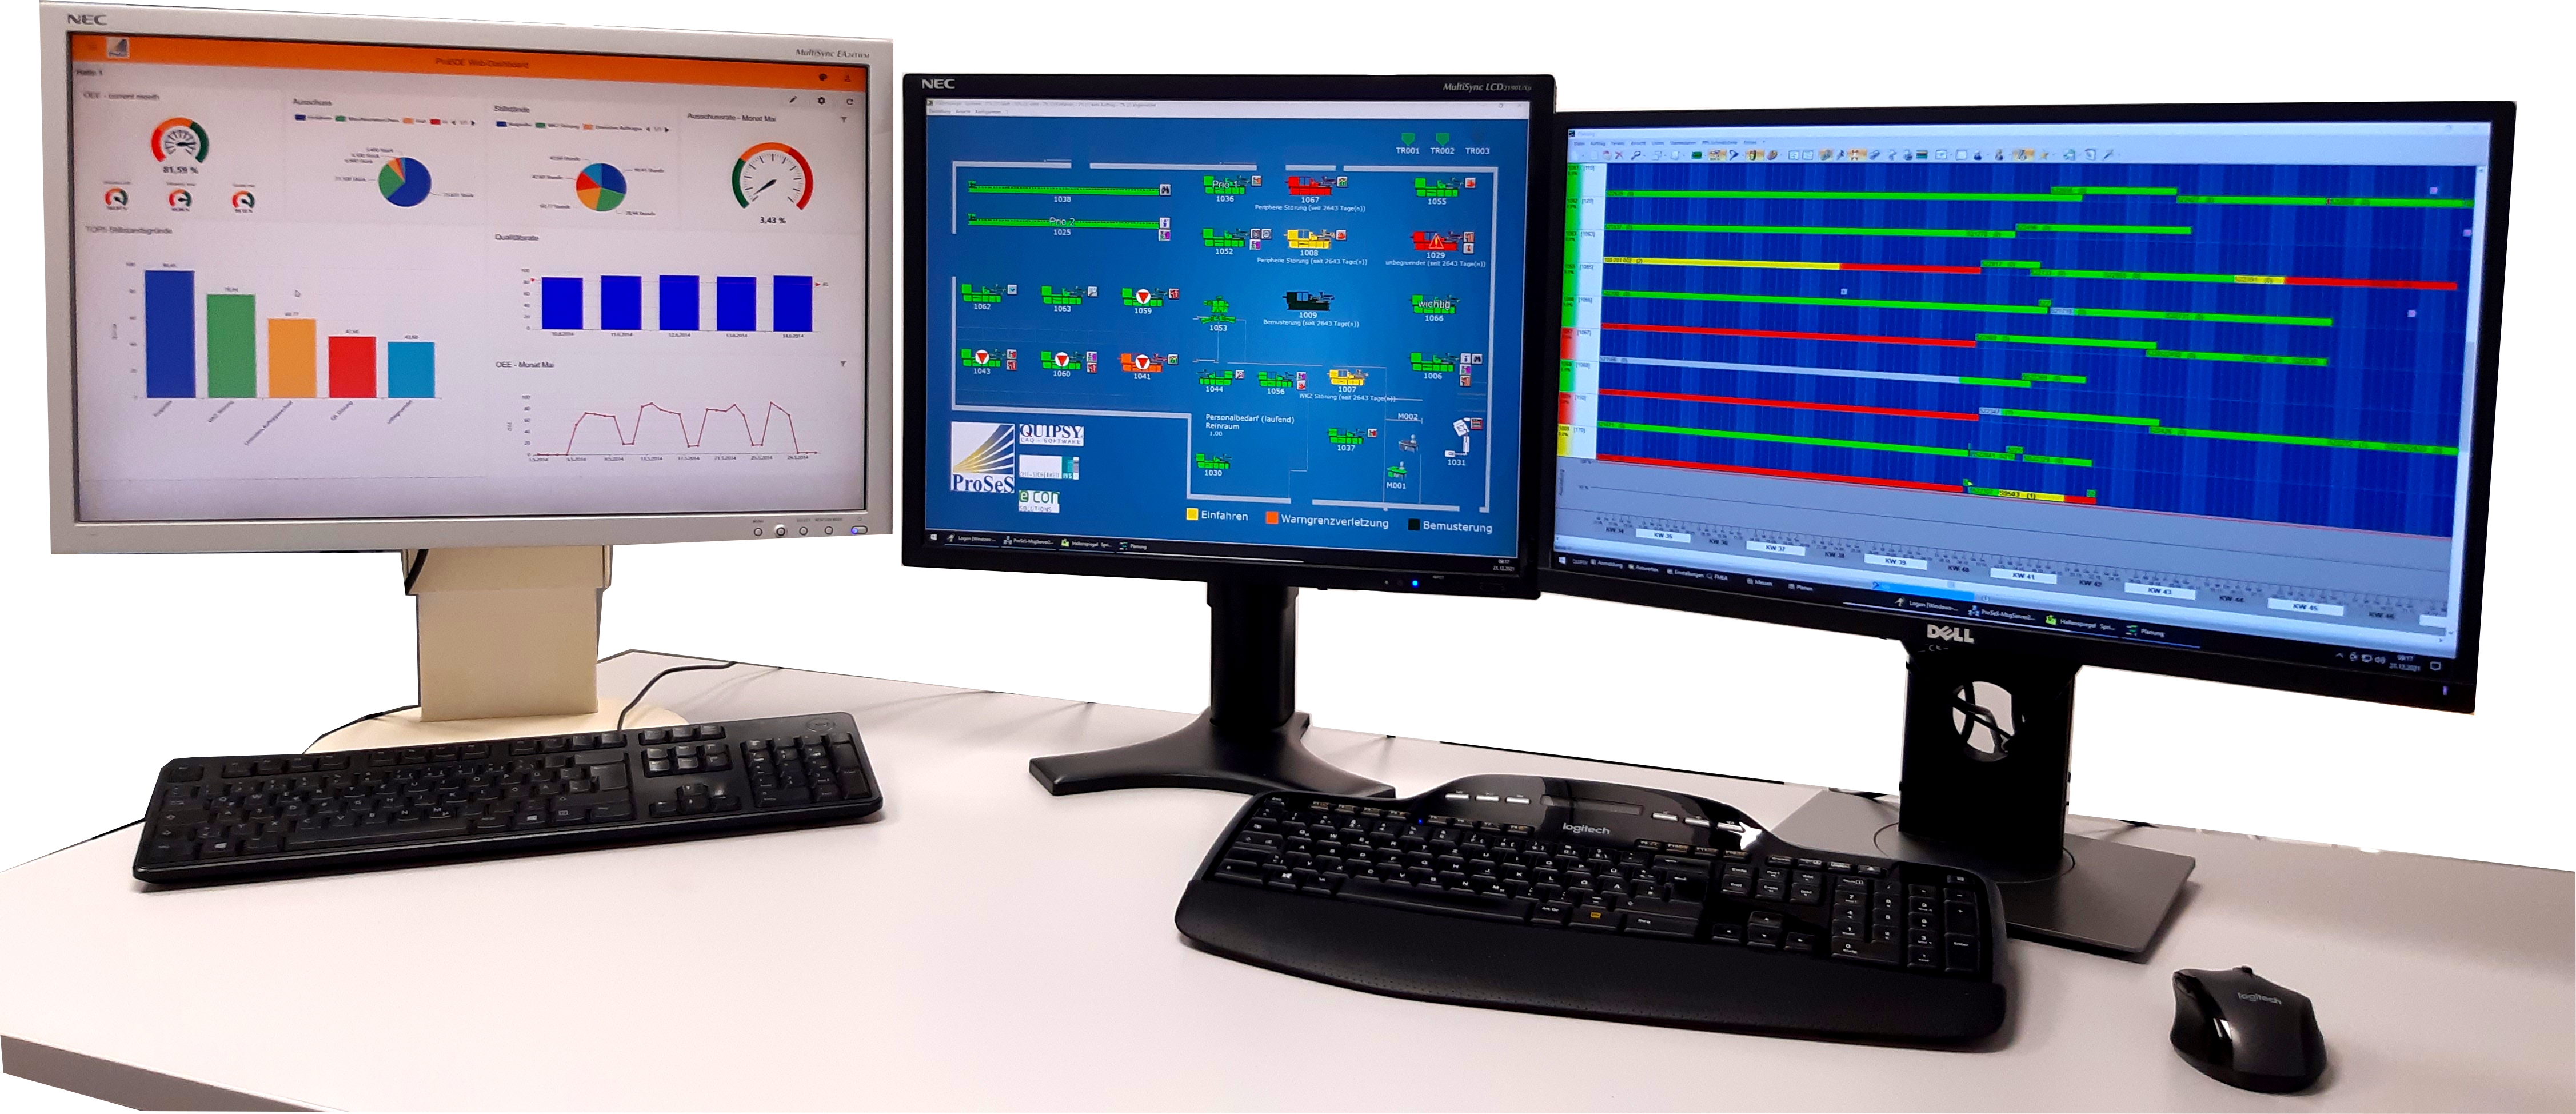 Darstellung verschiedener ProBDE Softwarekomponenten auf Monitoren